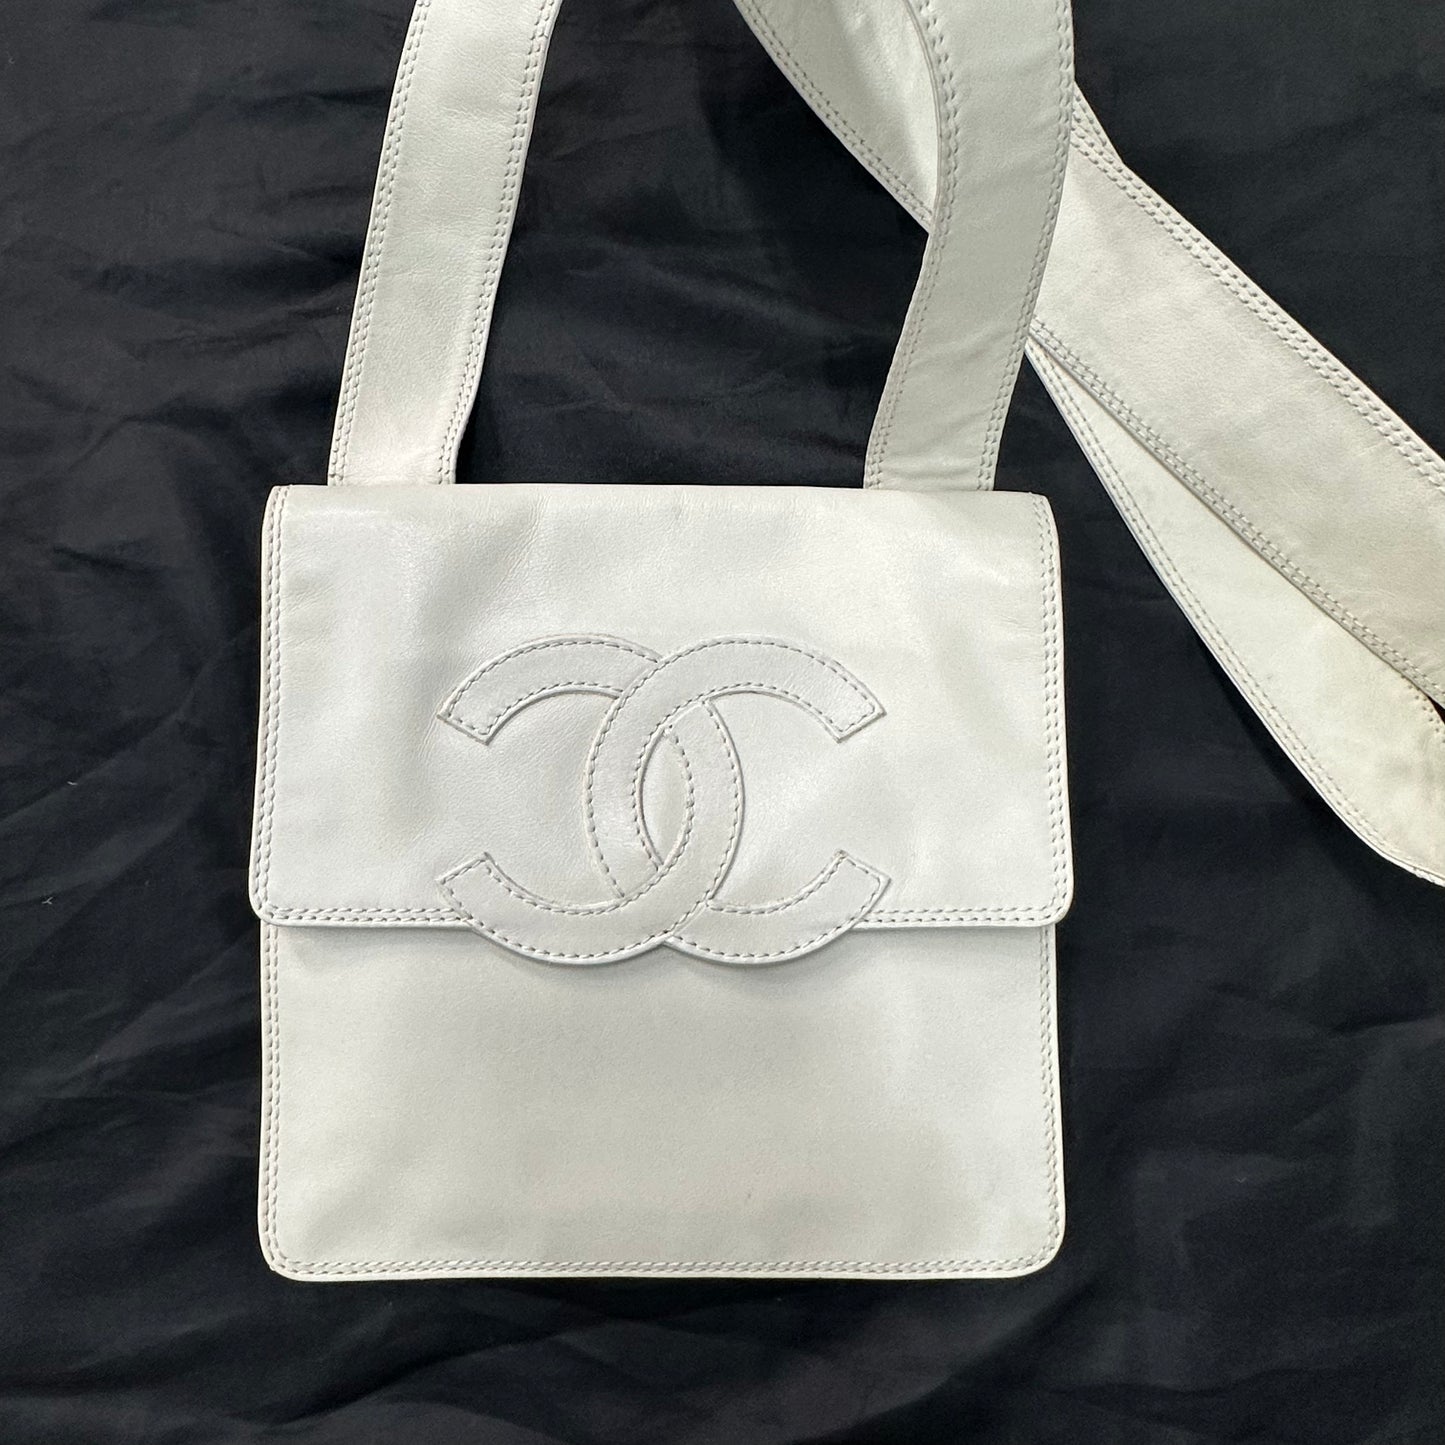 Chanel envelope shoulder bag vip collection